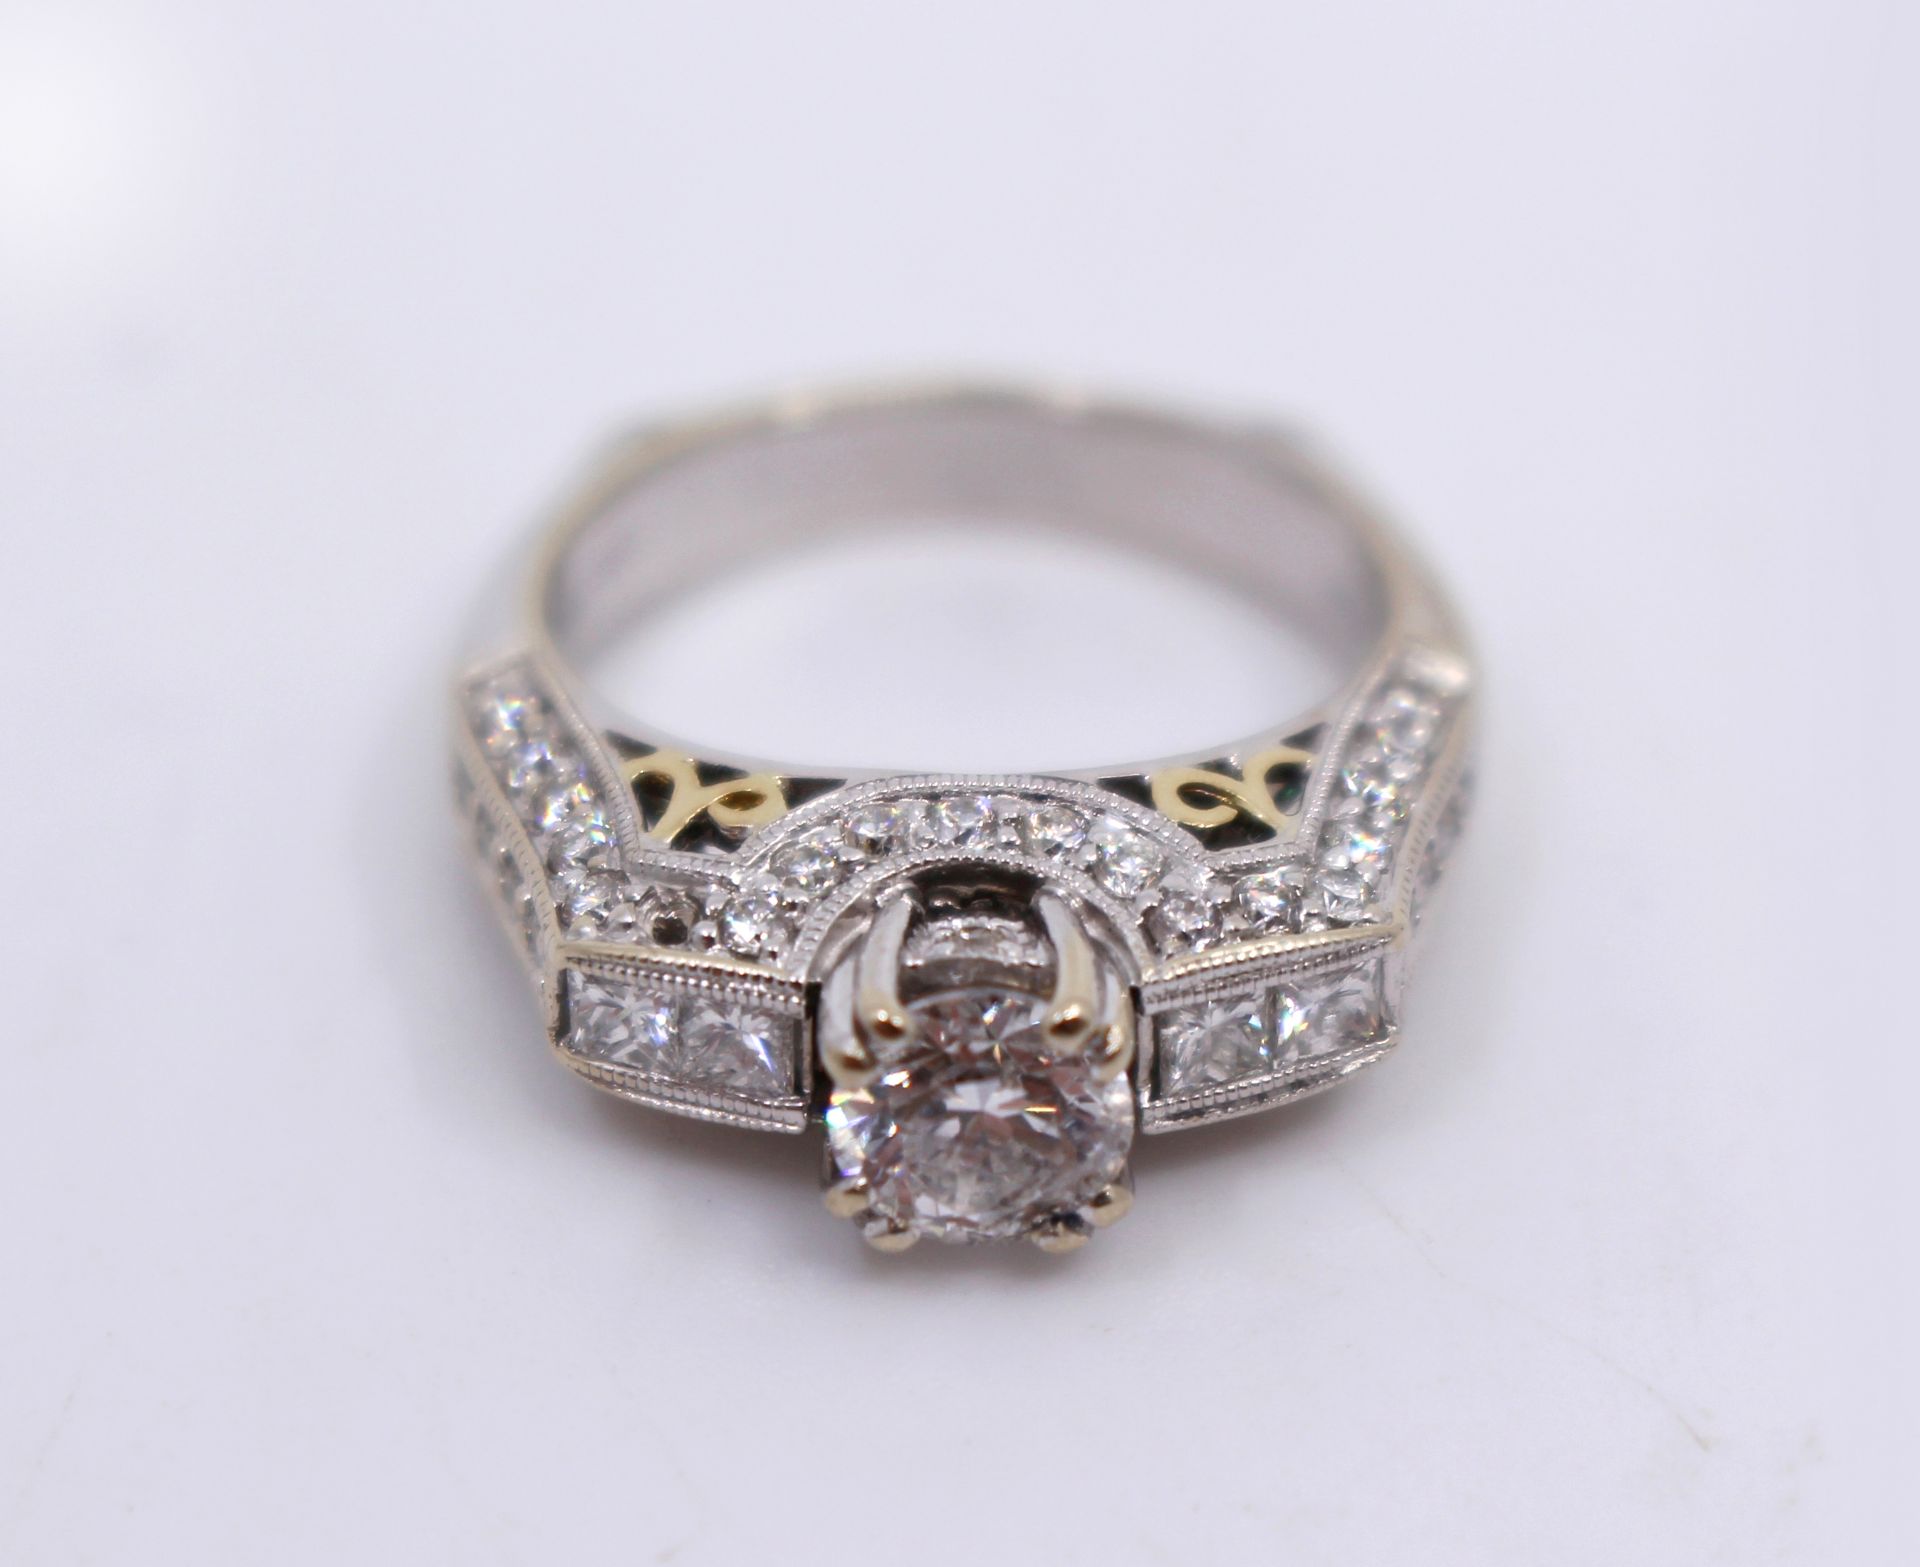 1.53 Carat Diamond Ring White Gold - Image 3 of 4